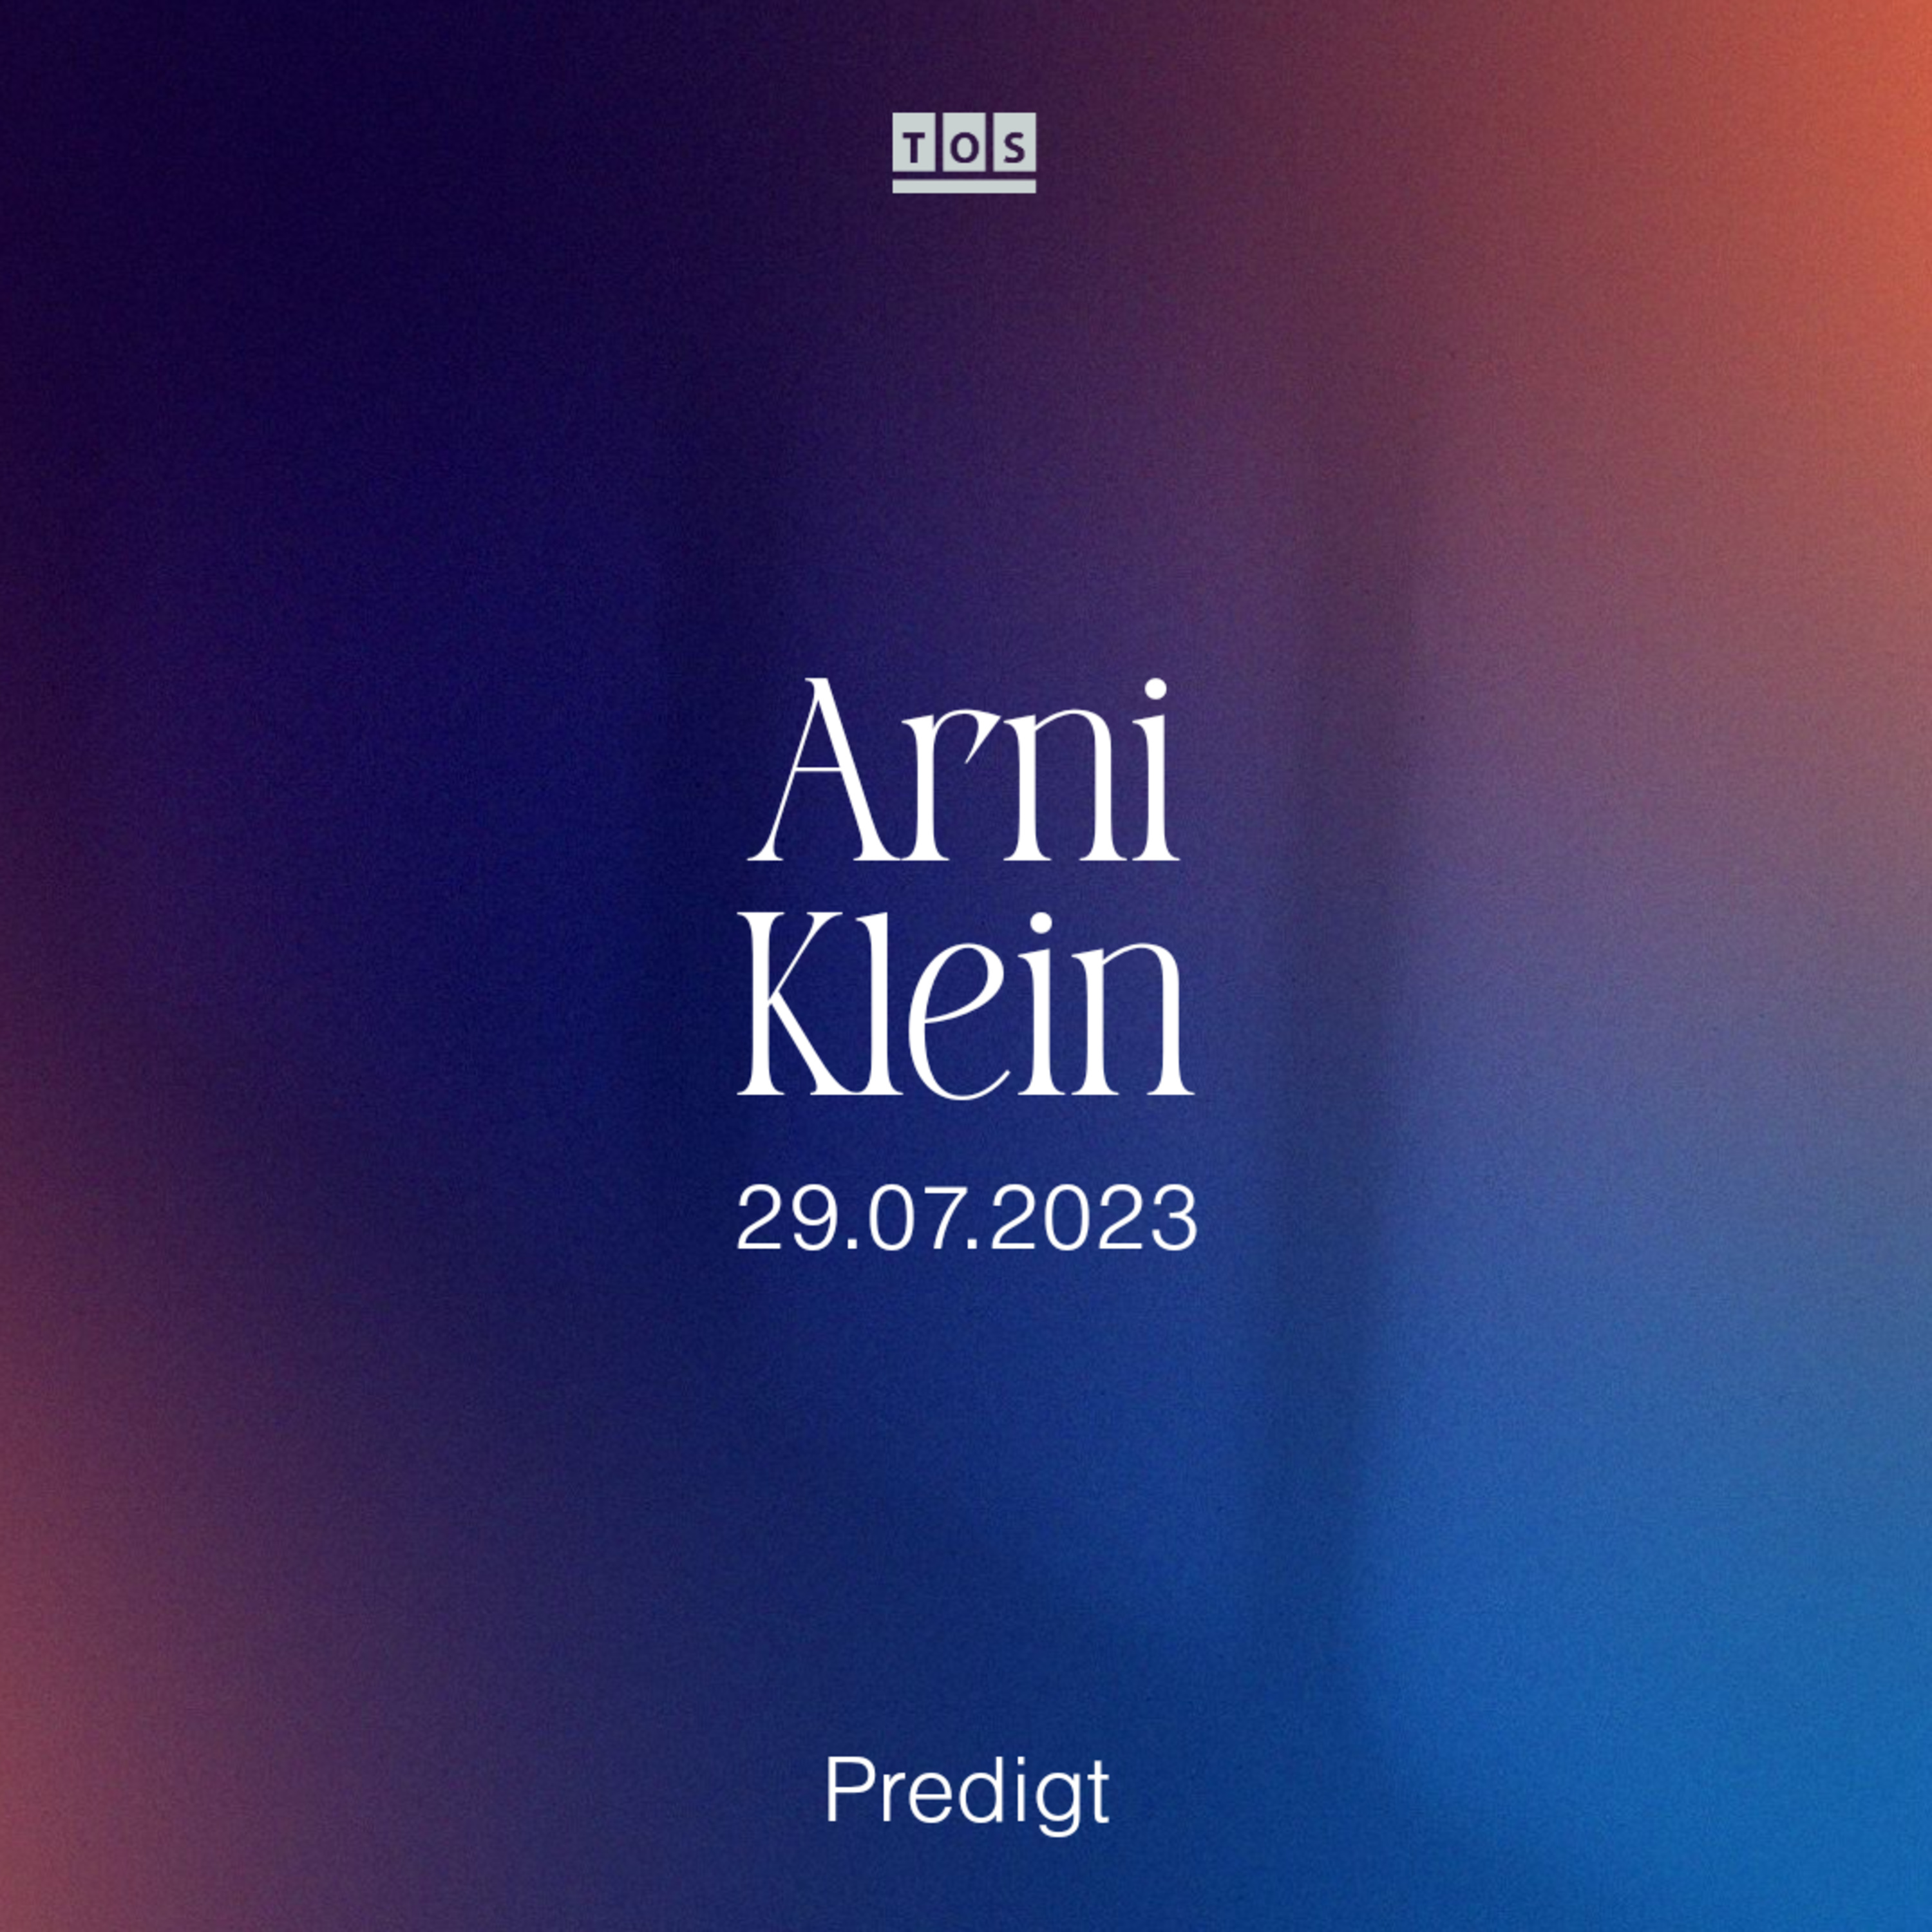 Arni Klein - 29.07.2023